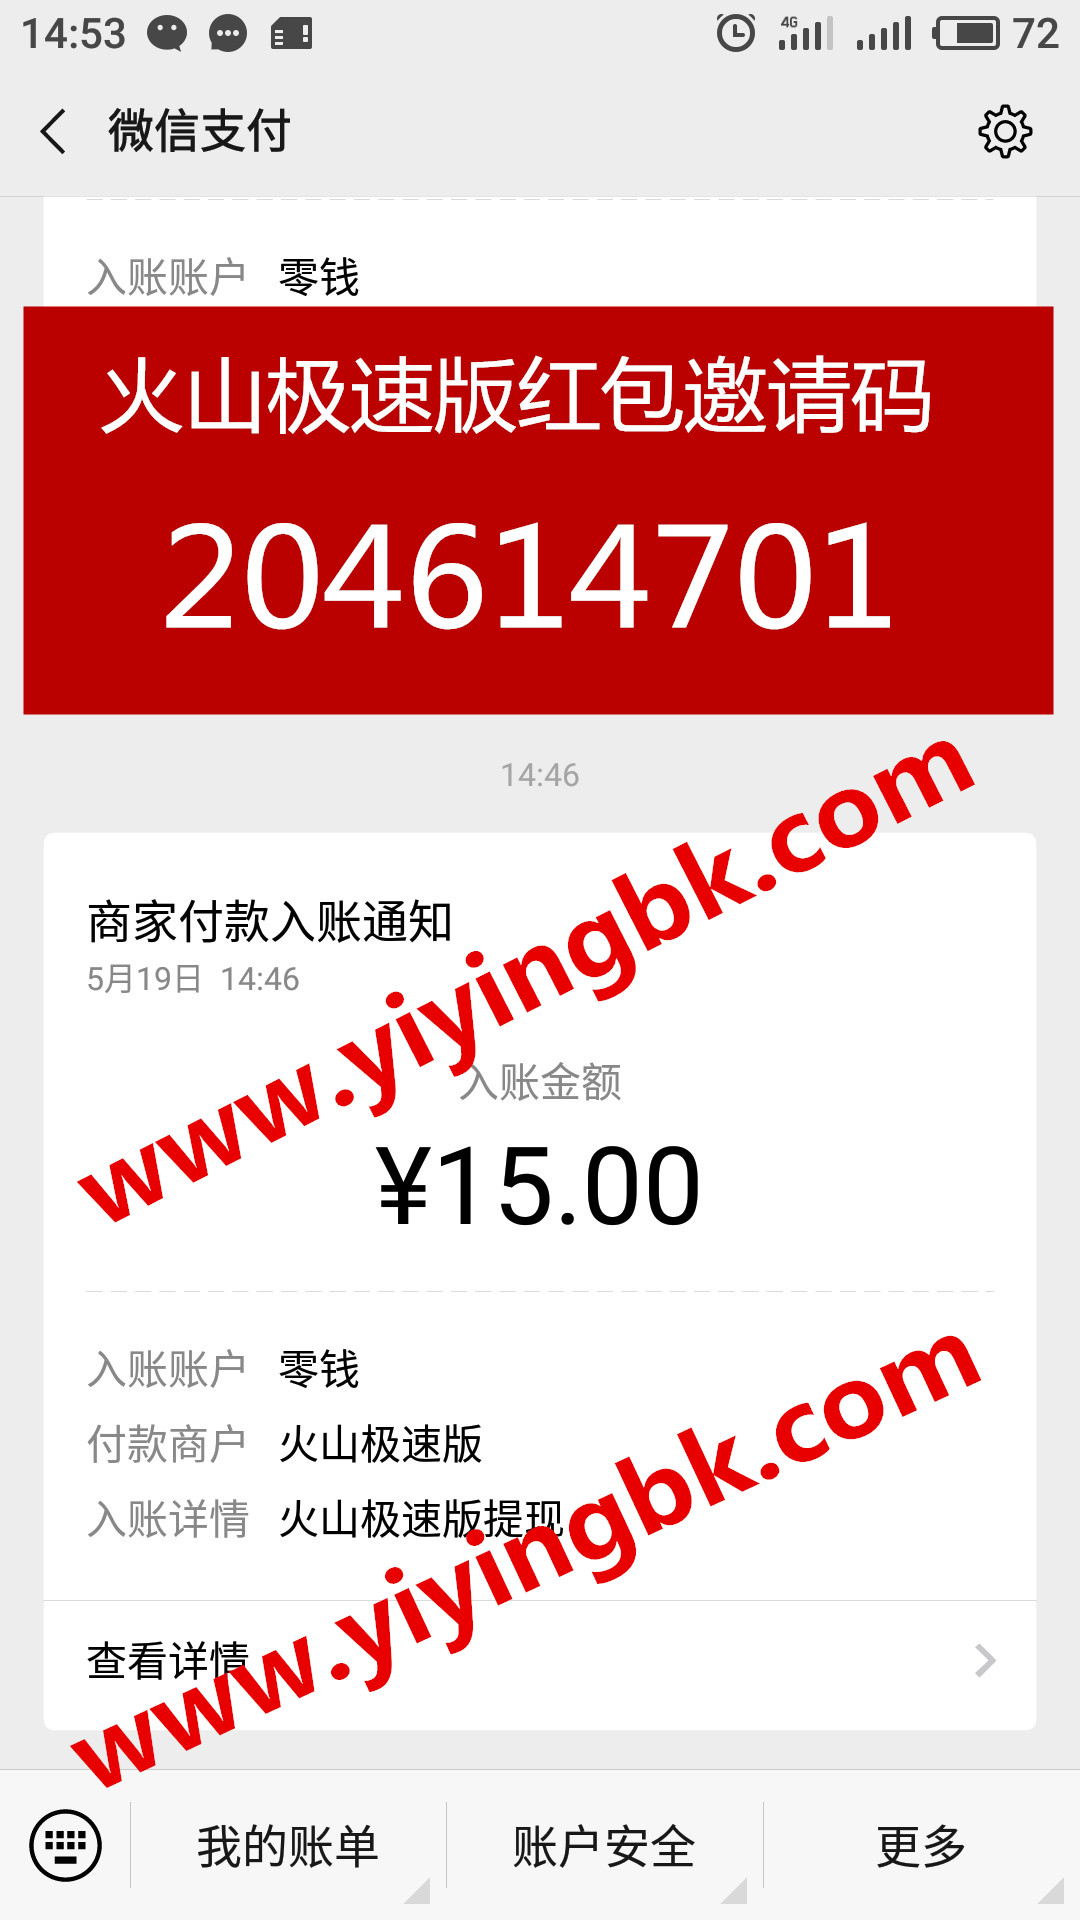 免费看视频赚钱，微信提现15元极速到账，www.yiyingbk.com